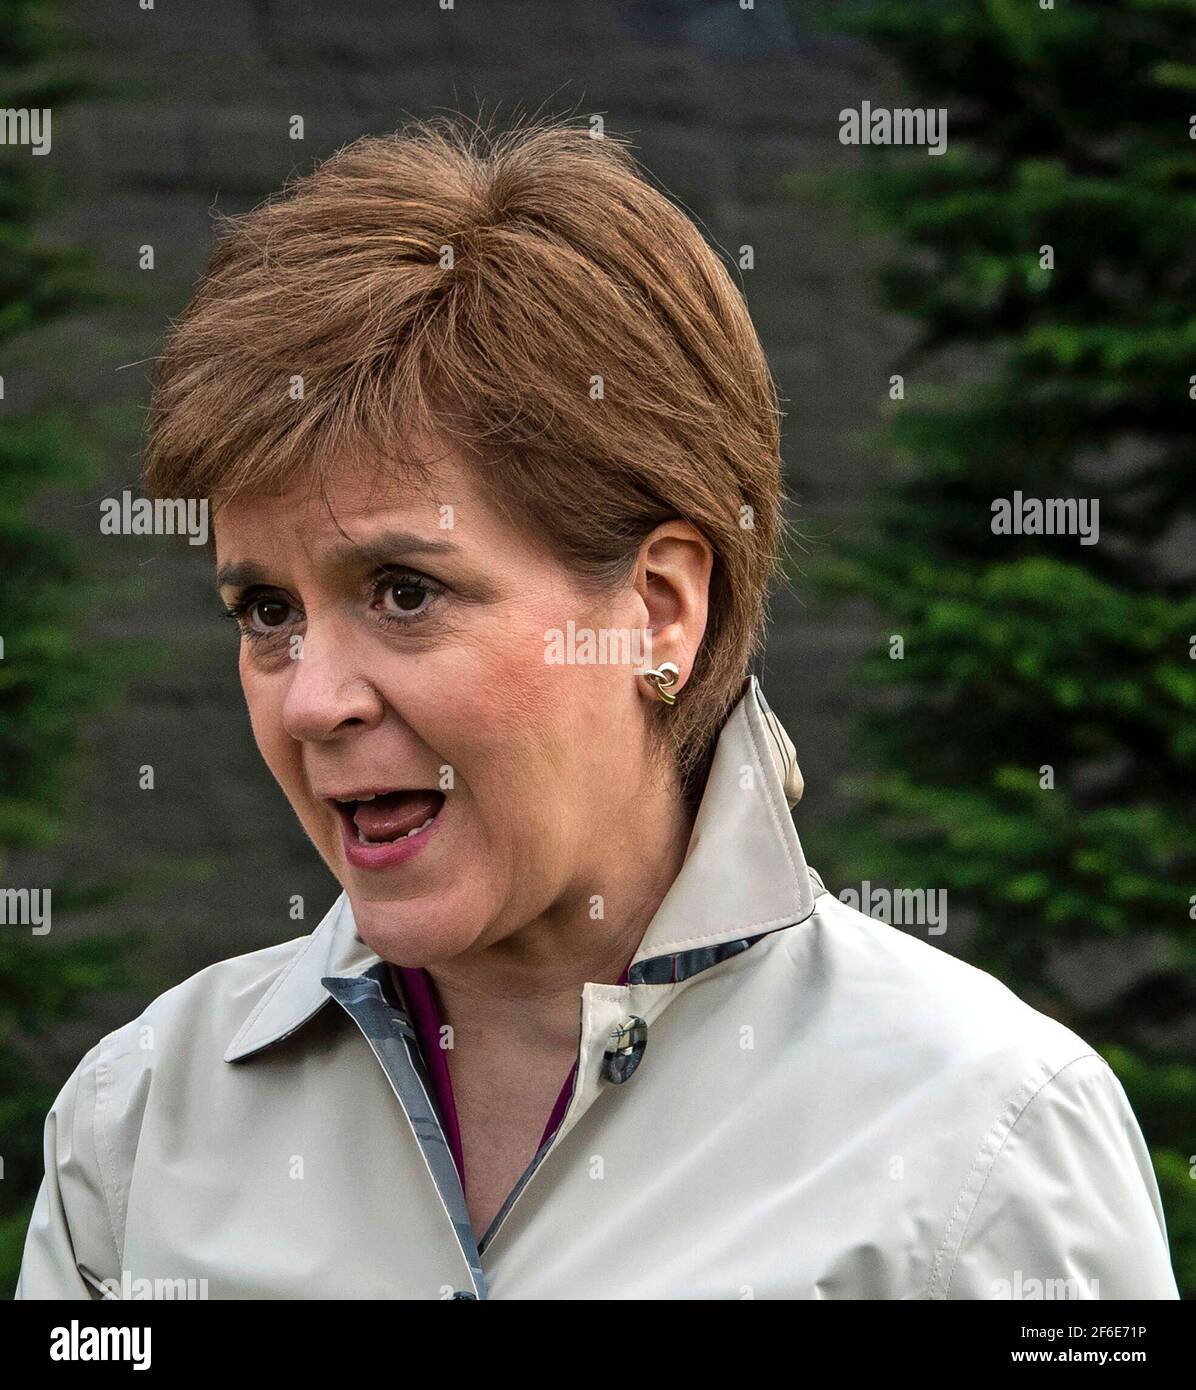 Erste Ministerin Nicola Sturgeon, Vorsitzende der Scottish National Party in Partick in Glasgow, Schottland, wo sie den virtuellen SNP-Wahlkampf im Vorfeld der bevorstehenden schottischen Parlamentswahl am 6. Mai 2021 startet. Bilddatum: Mittwoch, 31. März 2021. Stockfoto